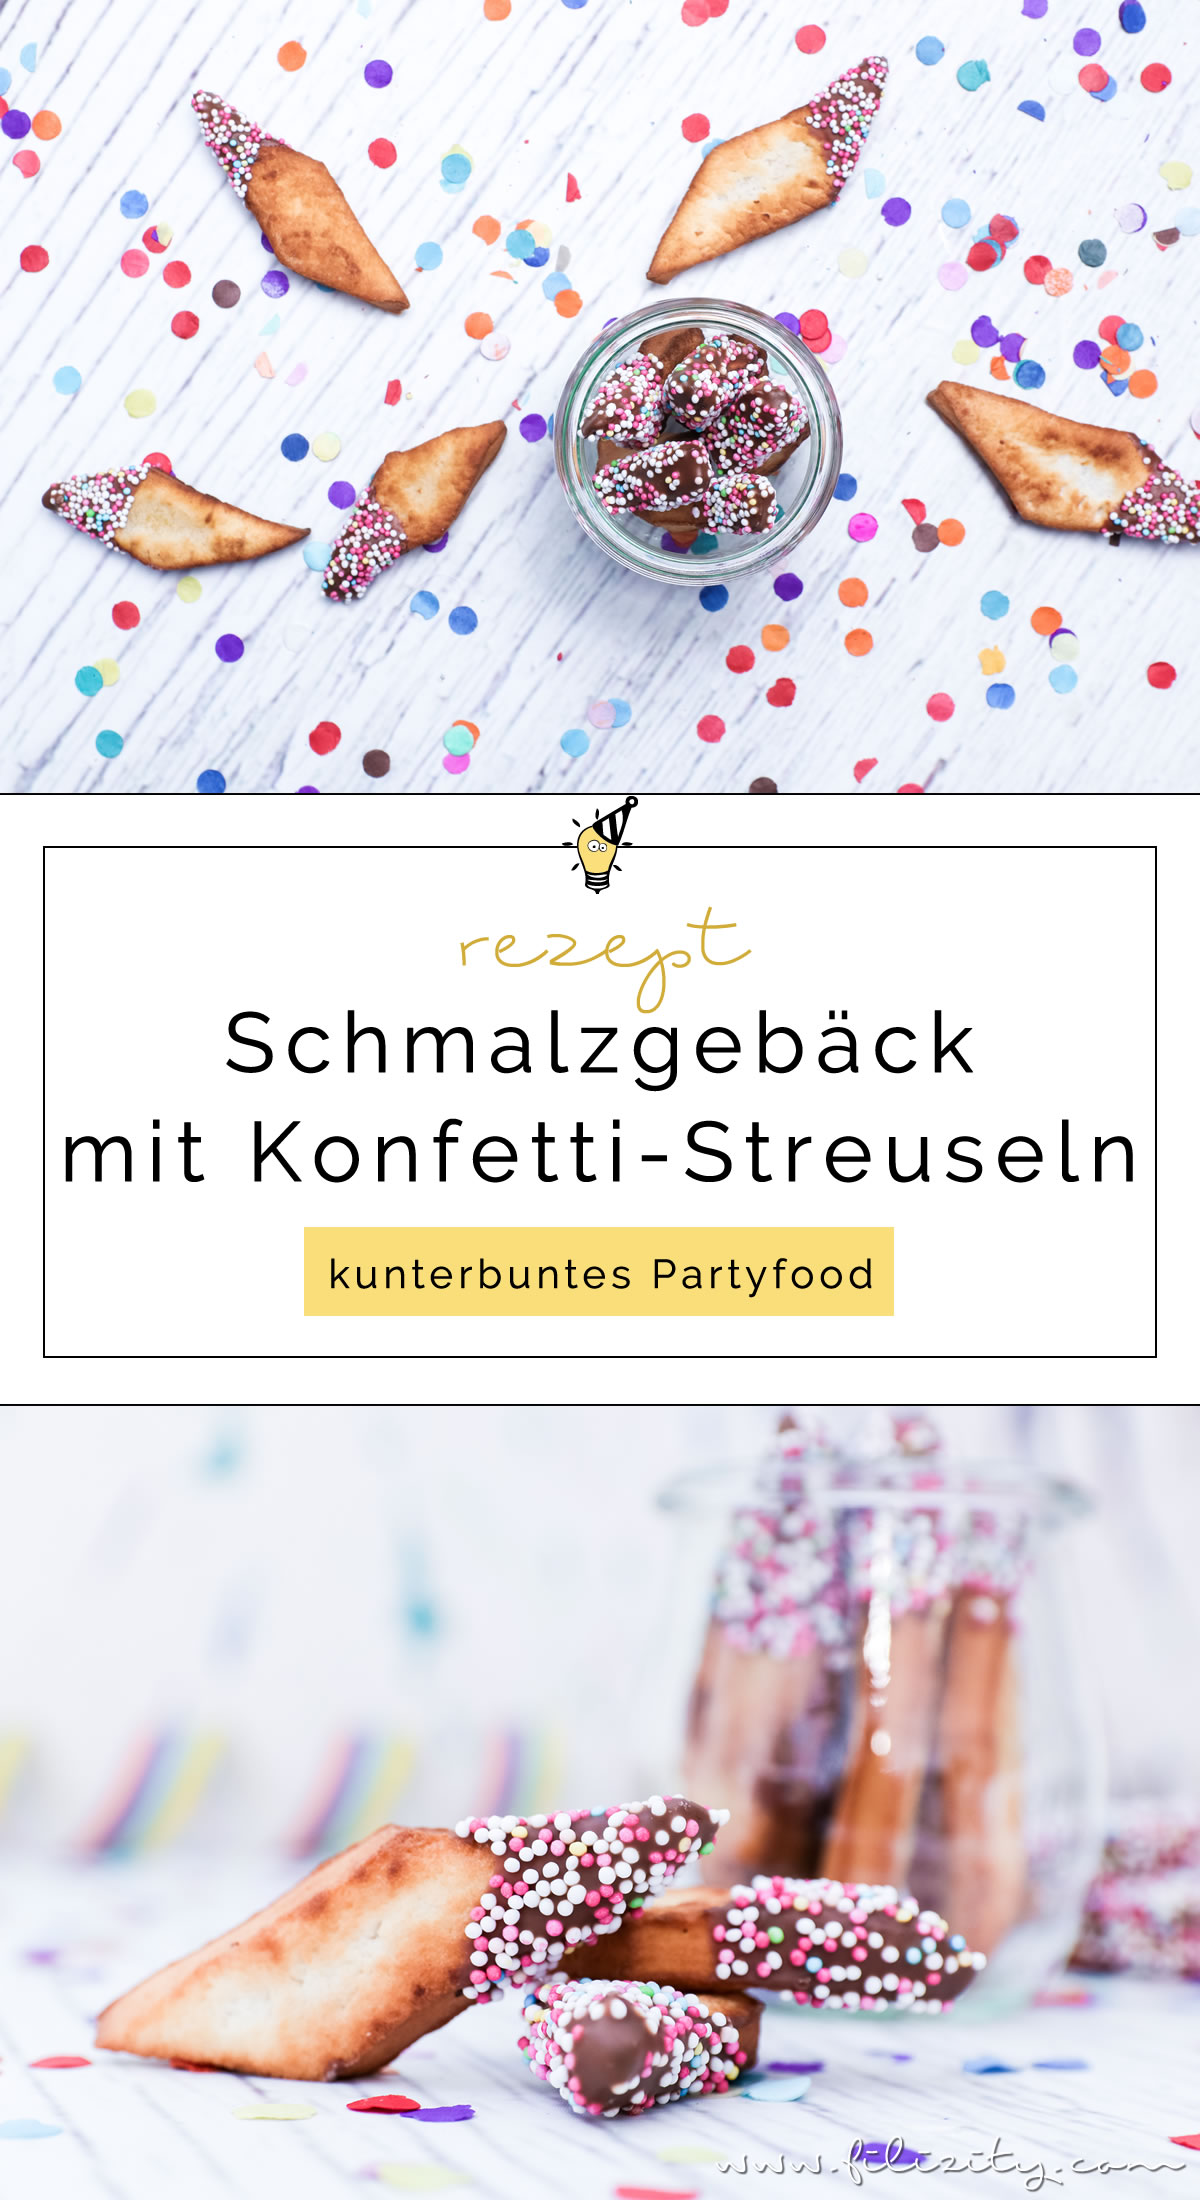 Schnelles Karnevals-Rezept: Schmalzgebäck wie Chiacchere mit Schokolade und „Konfetti“ | Filizity.com | Food-Blog aus dem Rheinland #karneval #fasching #helau #alaaf